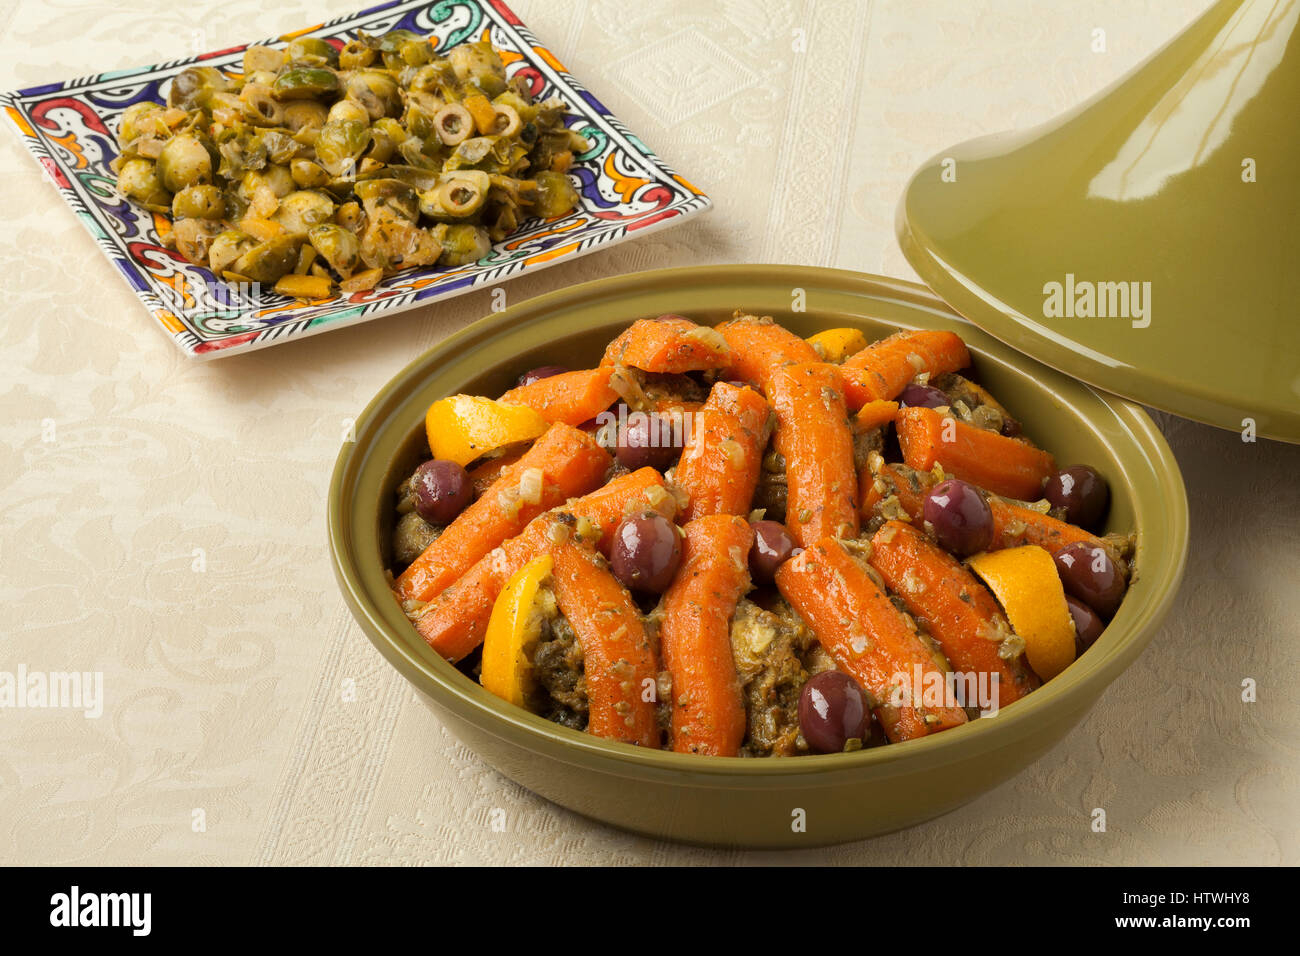 Tajine de poulet à la mode marocaine, les carottes, les olives et citron préservé avec une salade de choux de bruxelles Banque D'Images